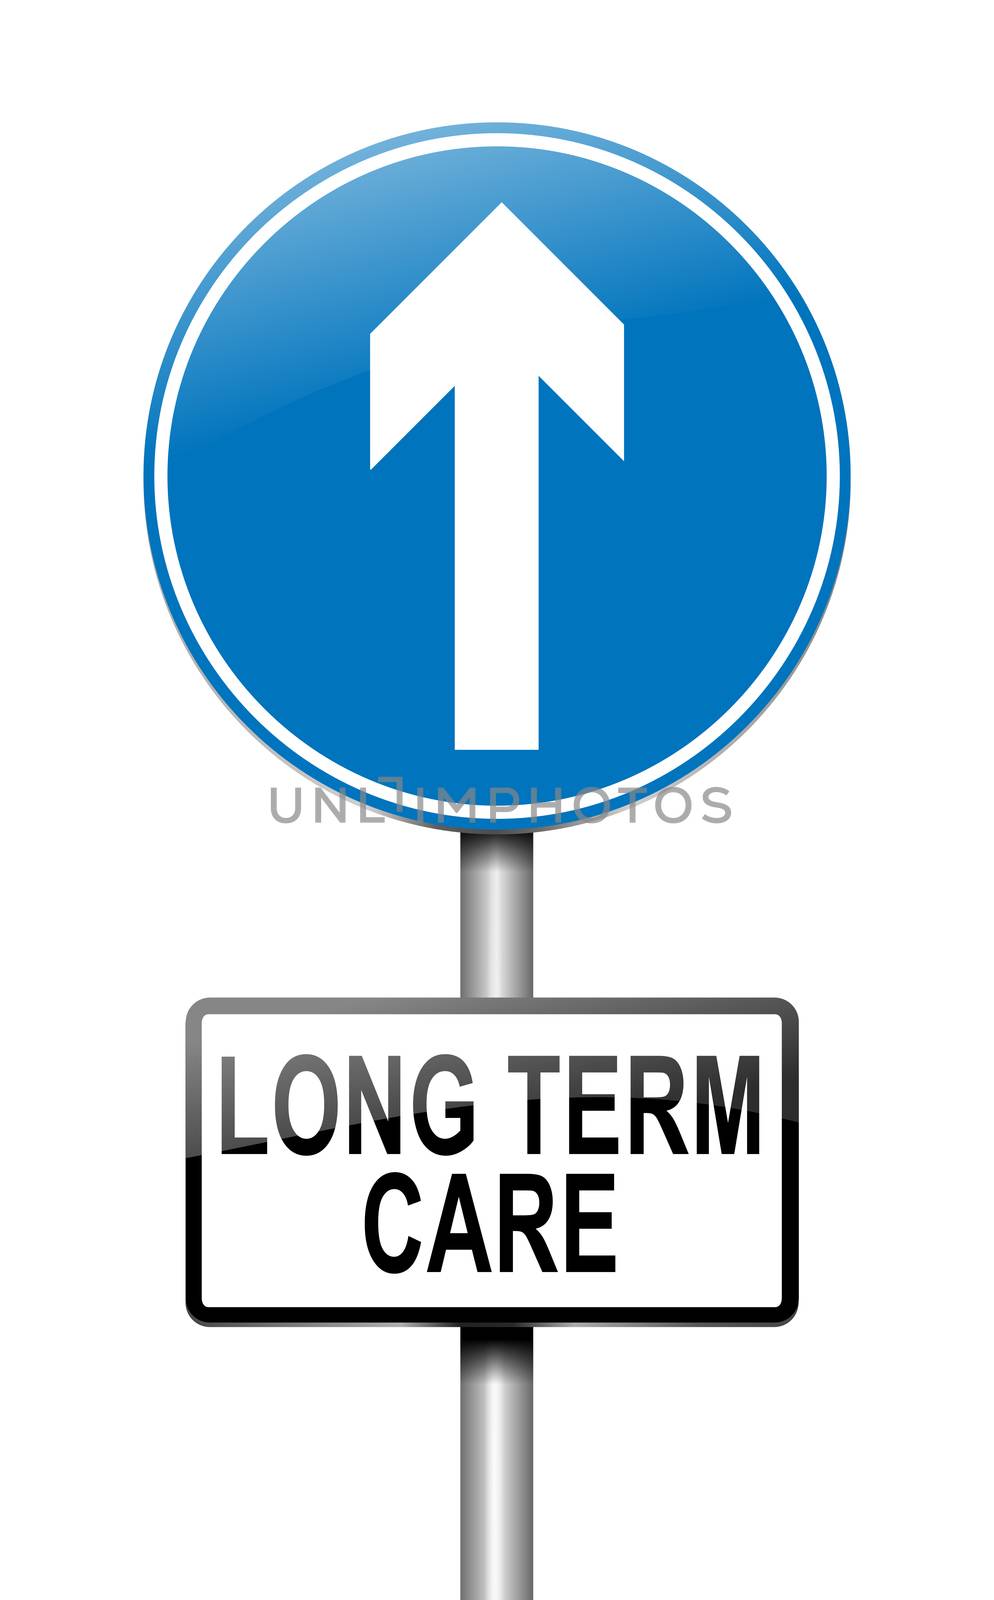 Long term care concept. by 72soul